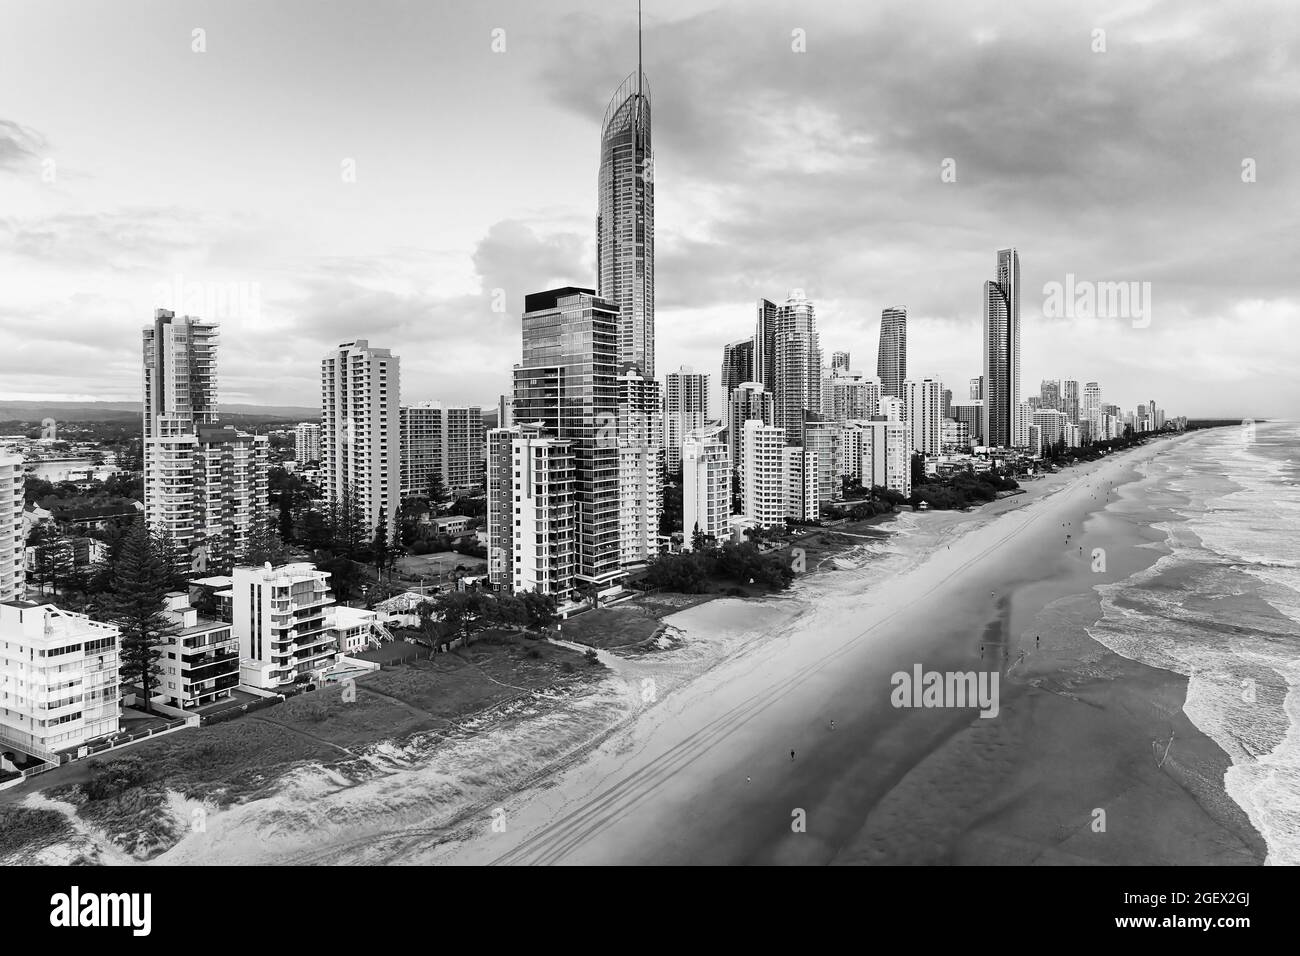 Moody y nublado paisaje urbano de torres urbanas modernas de gran altura frente al mar de Surfers Paradise costa del Pacífico - Costa de Oro Australiana. Foto de stock